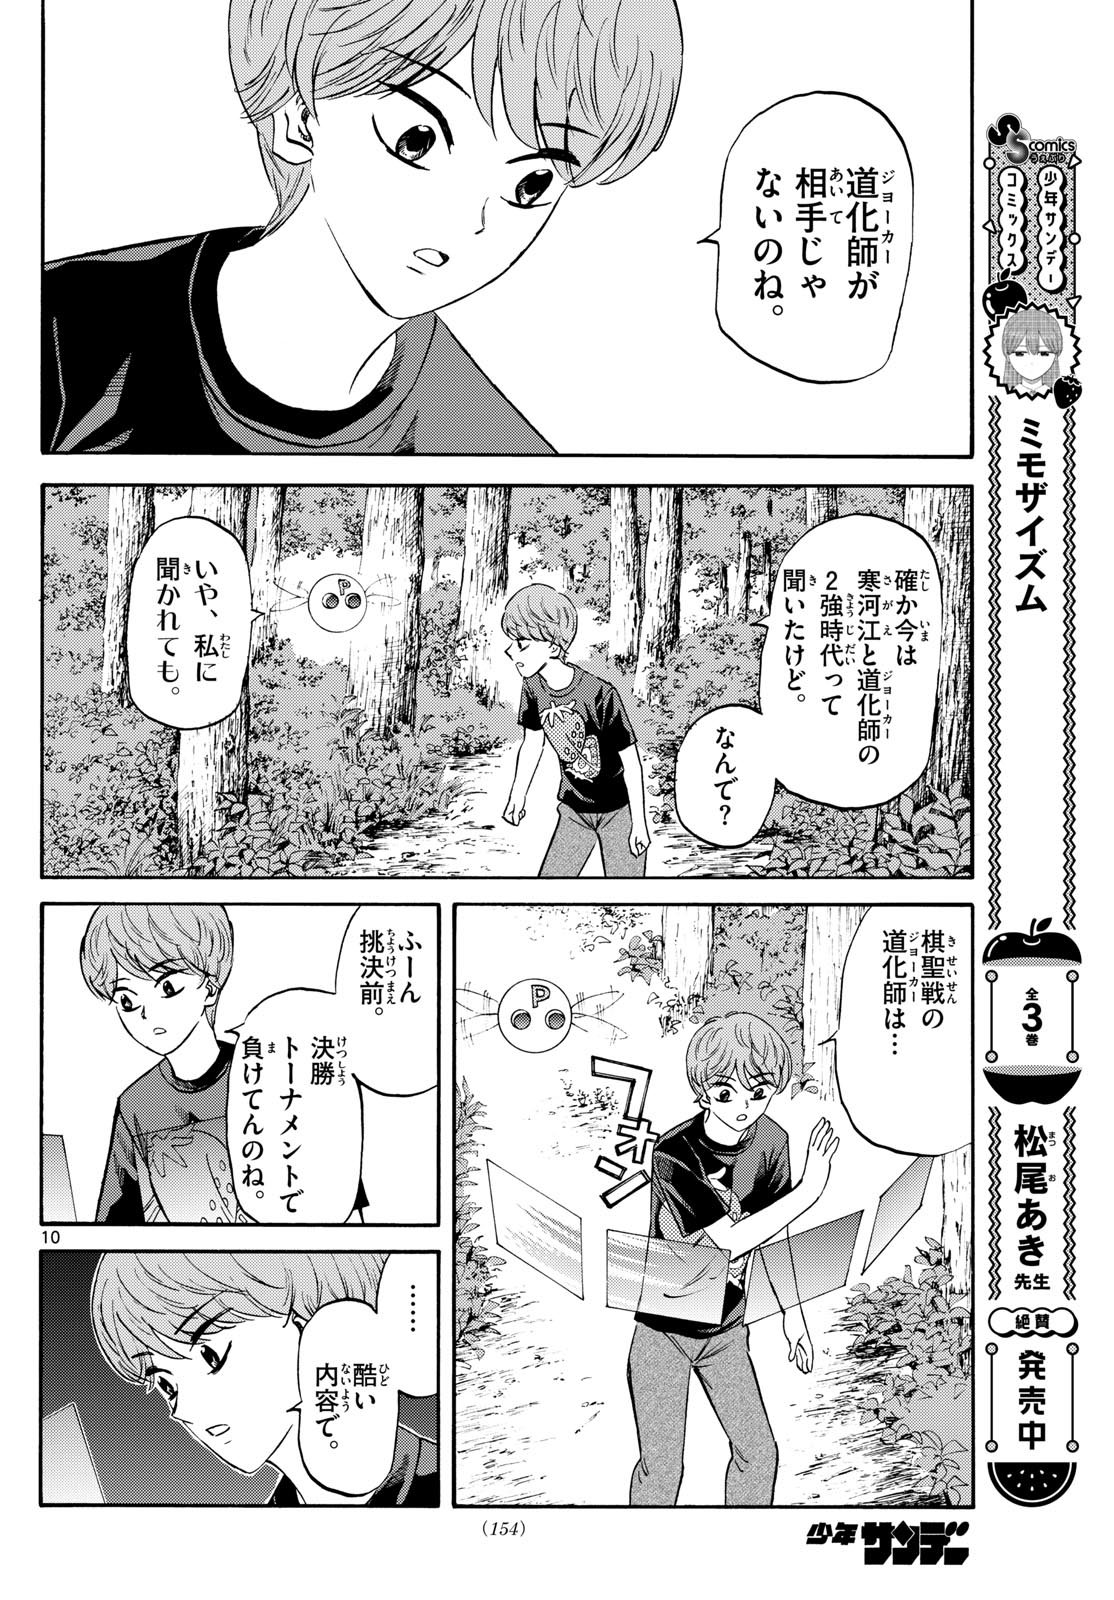 Tatsu to Ichigo - Chapter 195 - Page 10